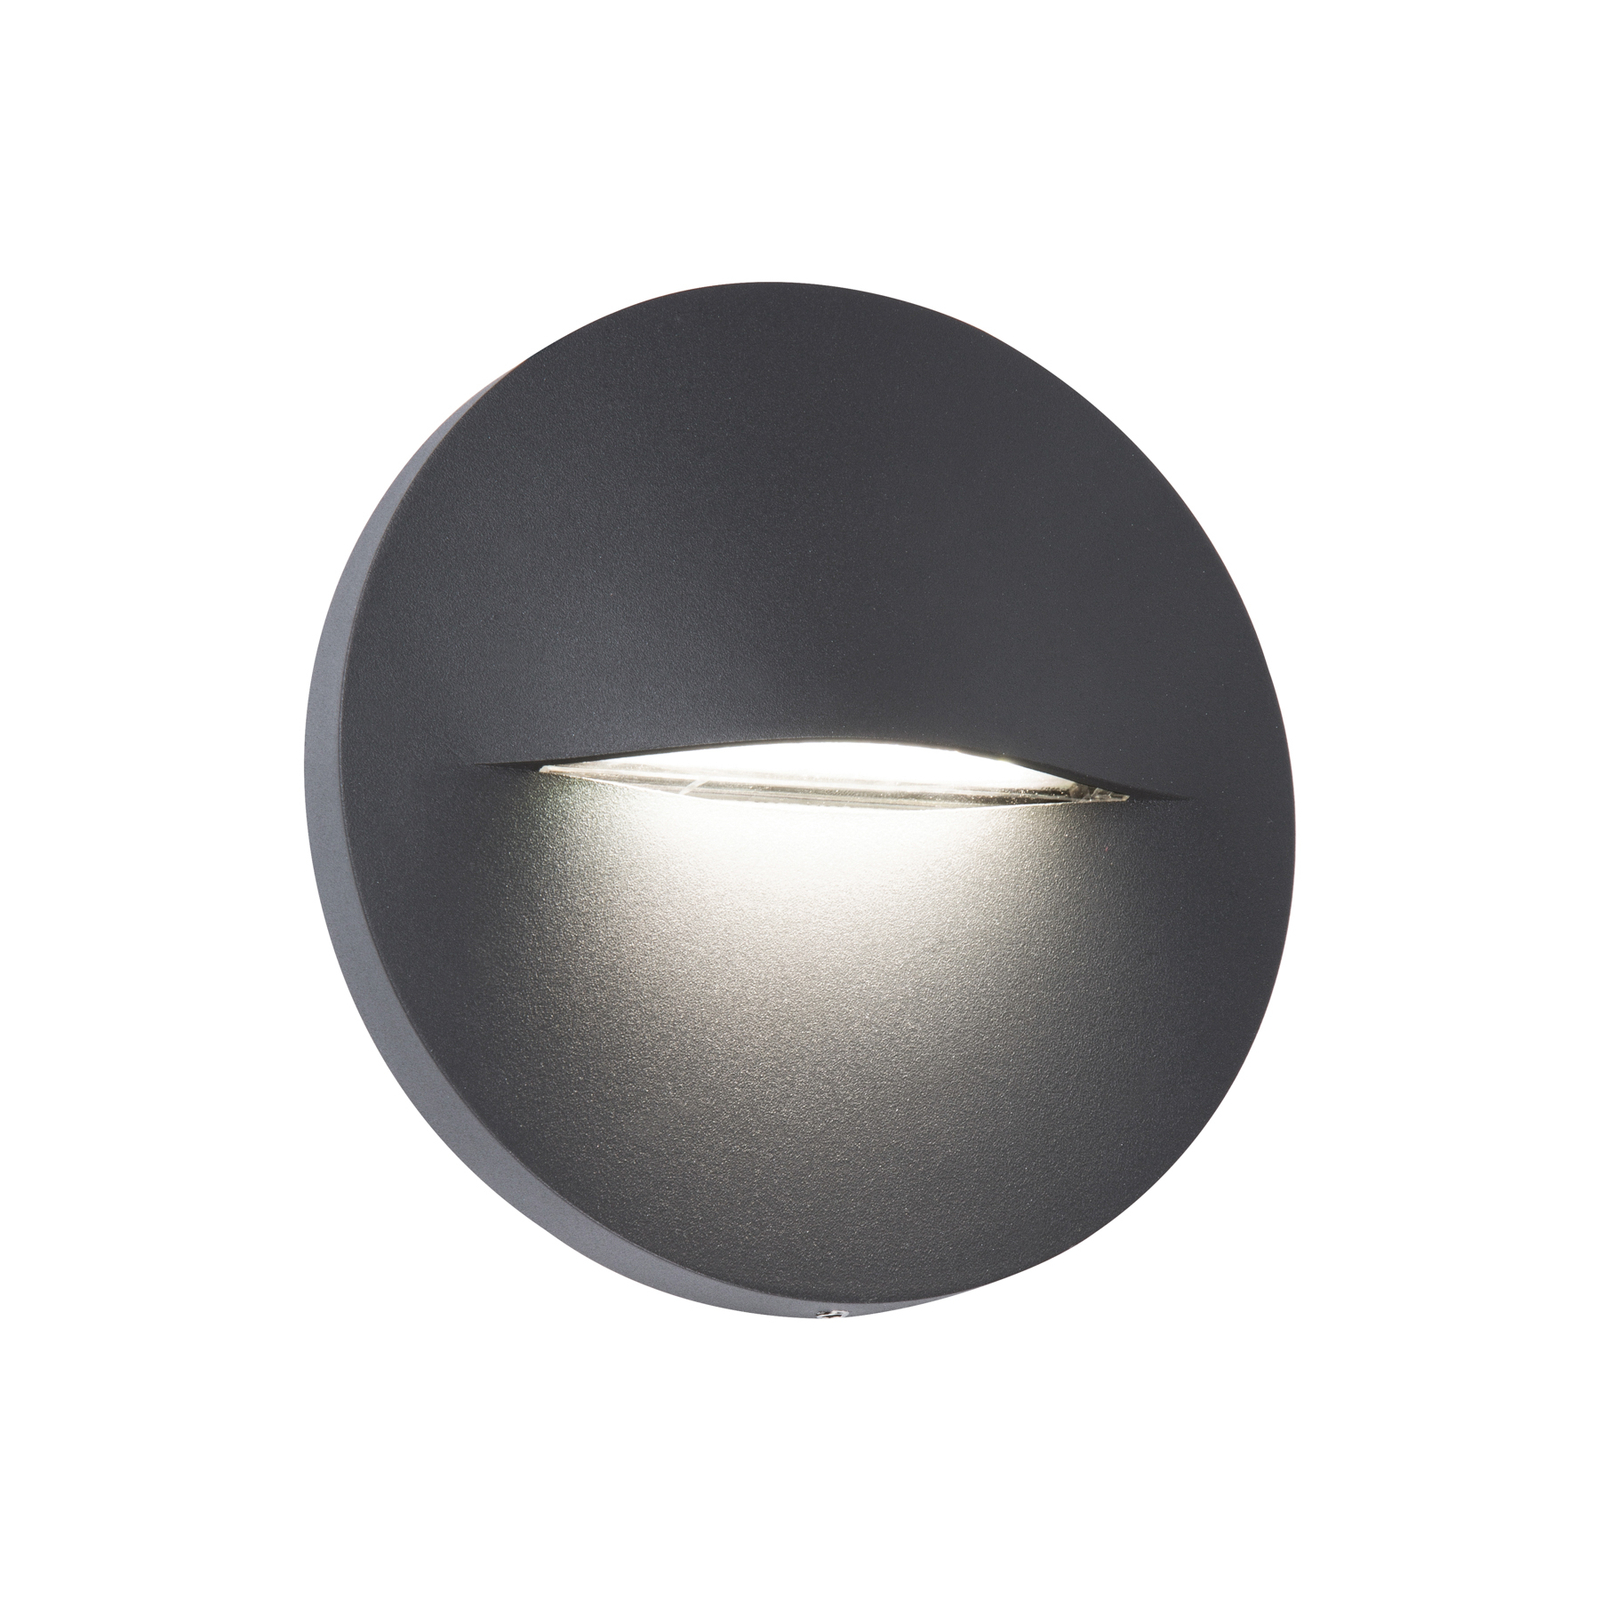 LED outdoor wall light Vita, dark grey, Ø 14 cm